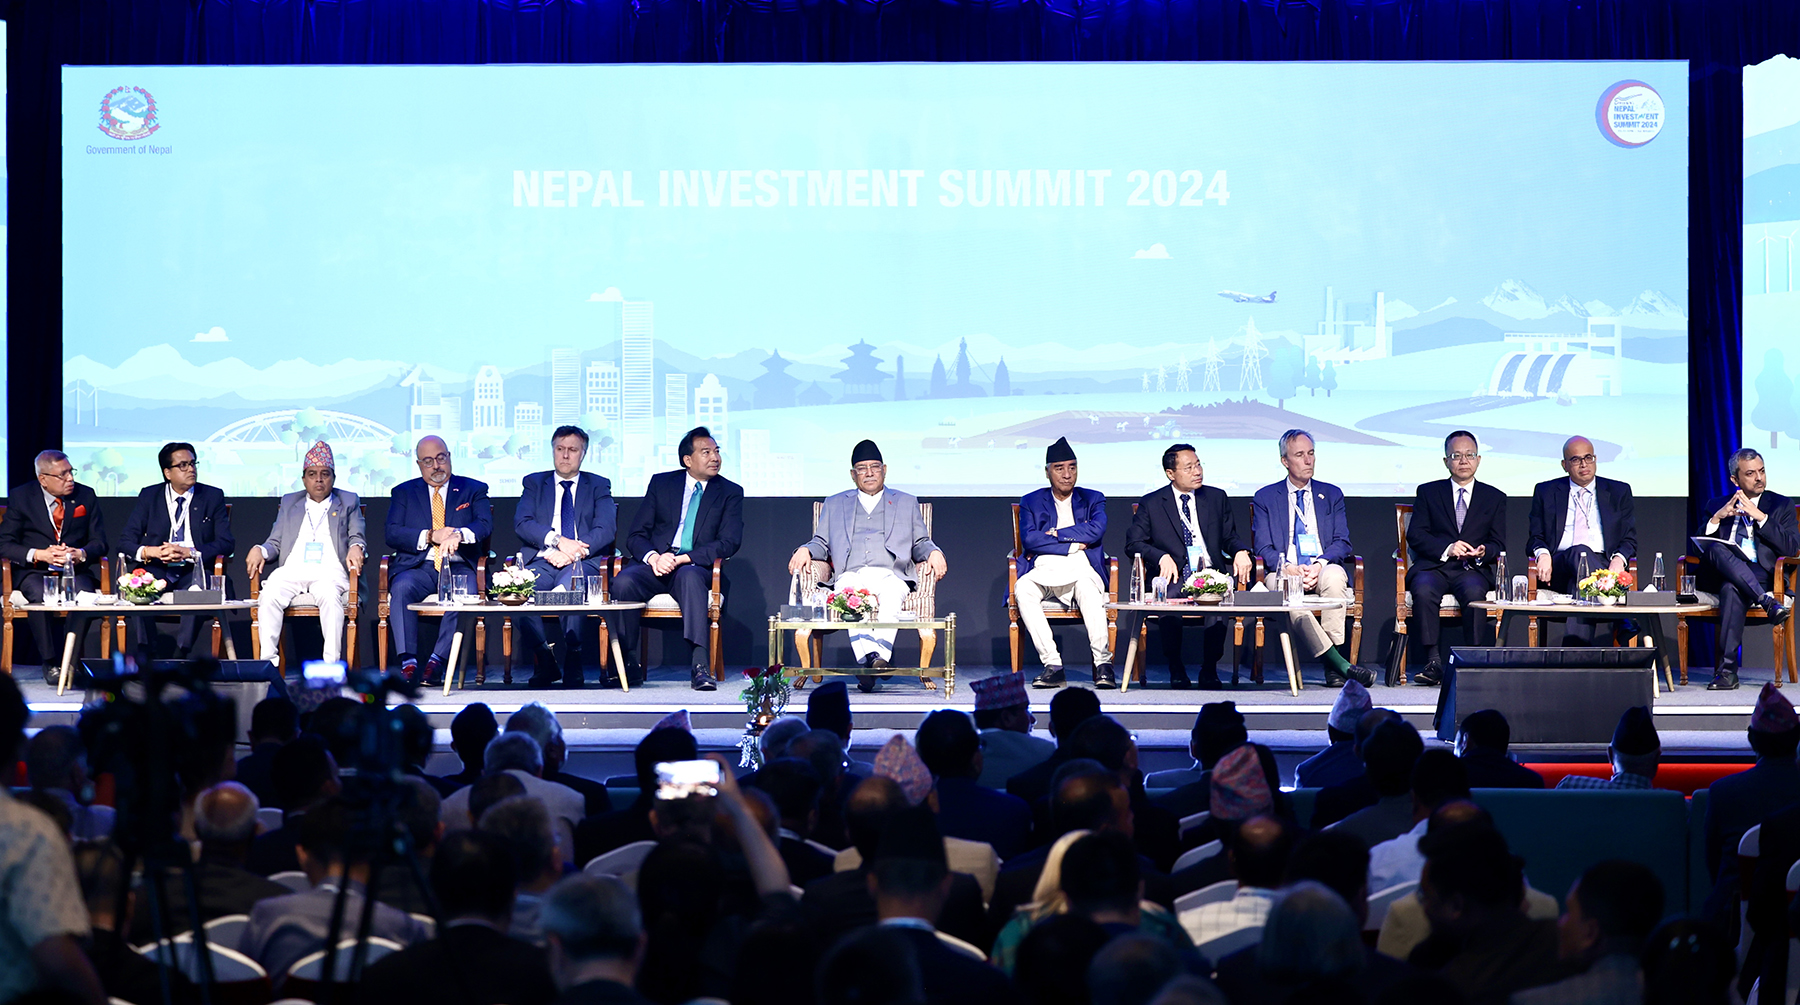 नेपाल उदार आर्थिक नीतिप्रति प्रतिबद्ध छ, लगानी गर्नुहोस्: प्रधानमन्त्री